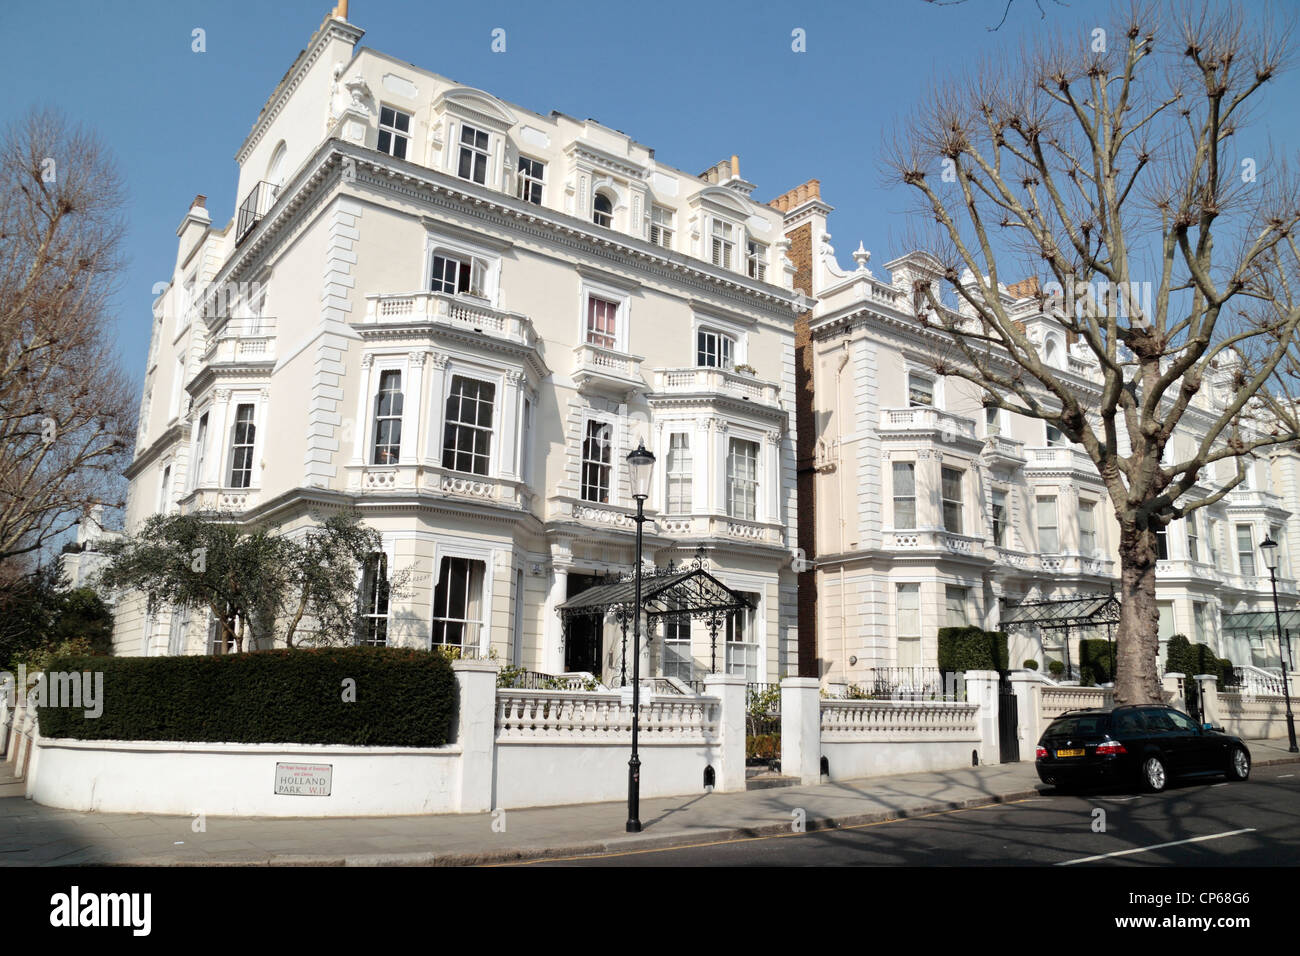 Propriétés exclusives sur Holland Park W11 dans le Royal Borough de Kensington et Chelsea, London, UK. Mars 2012 Banque D'Images